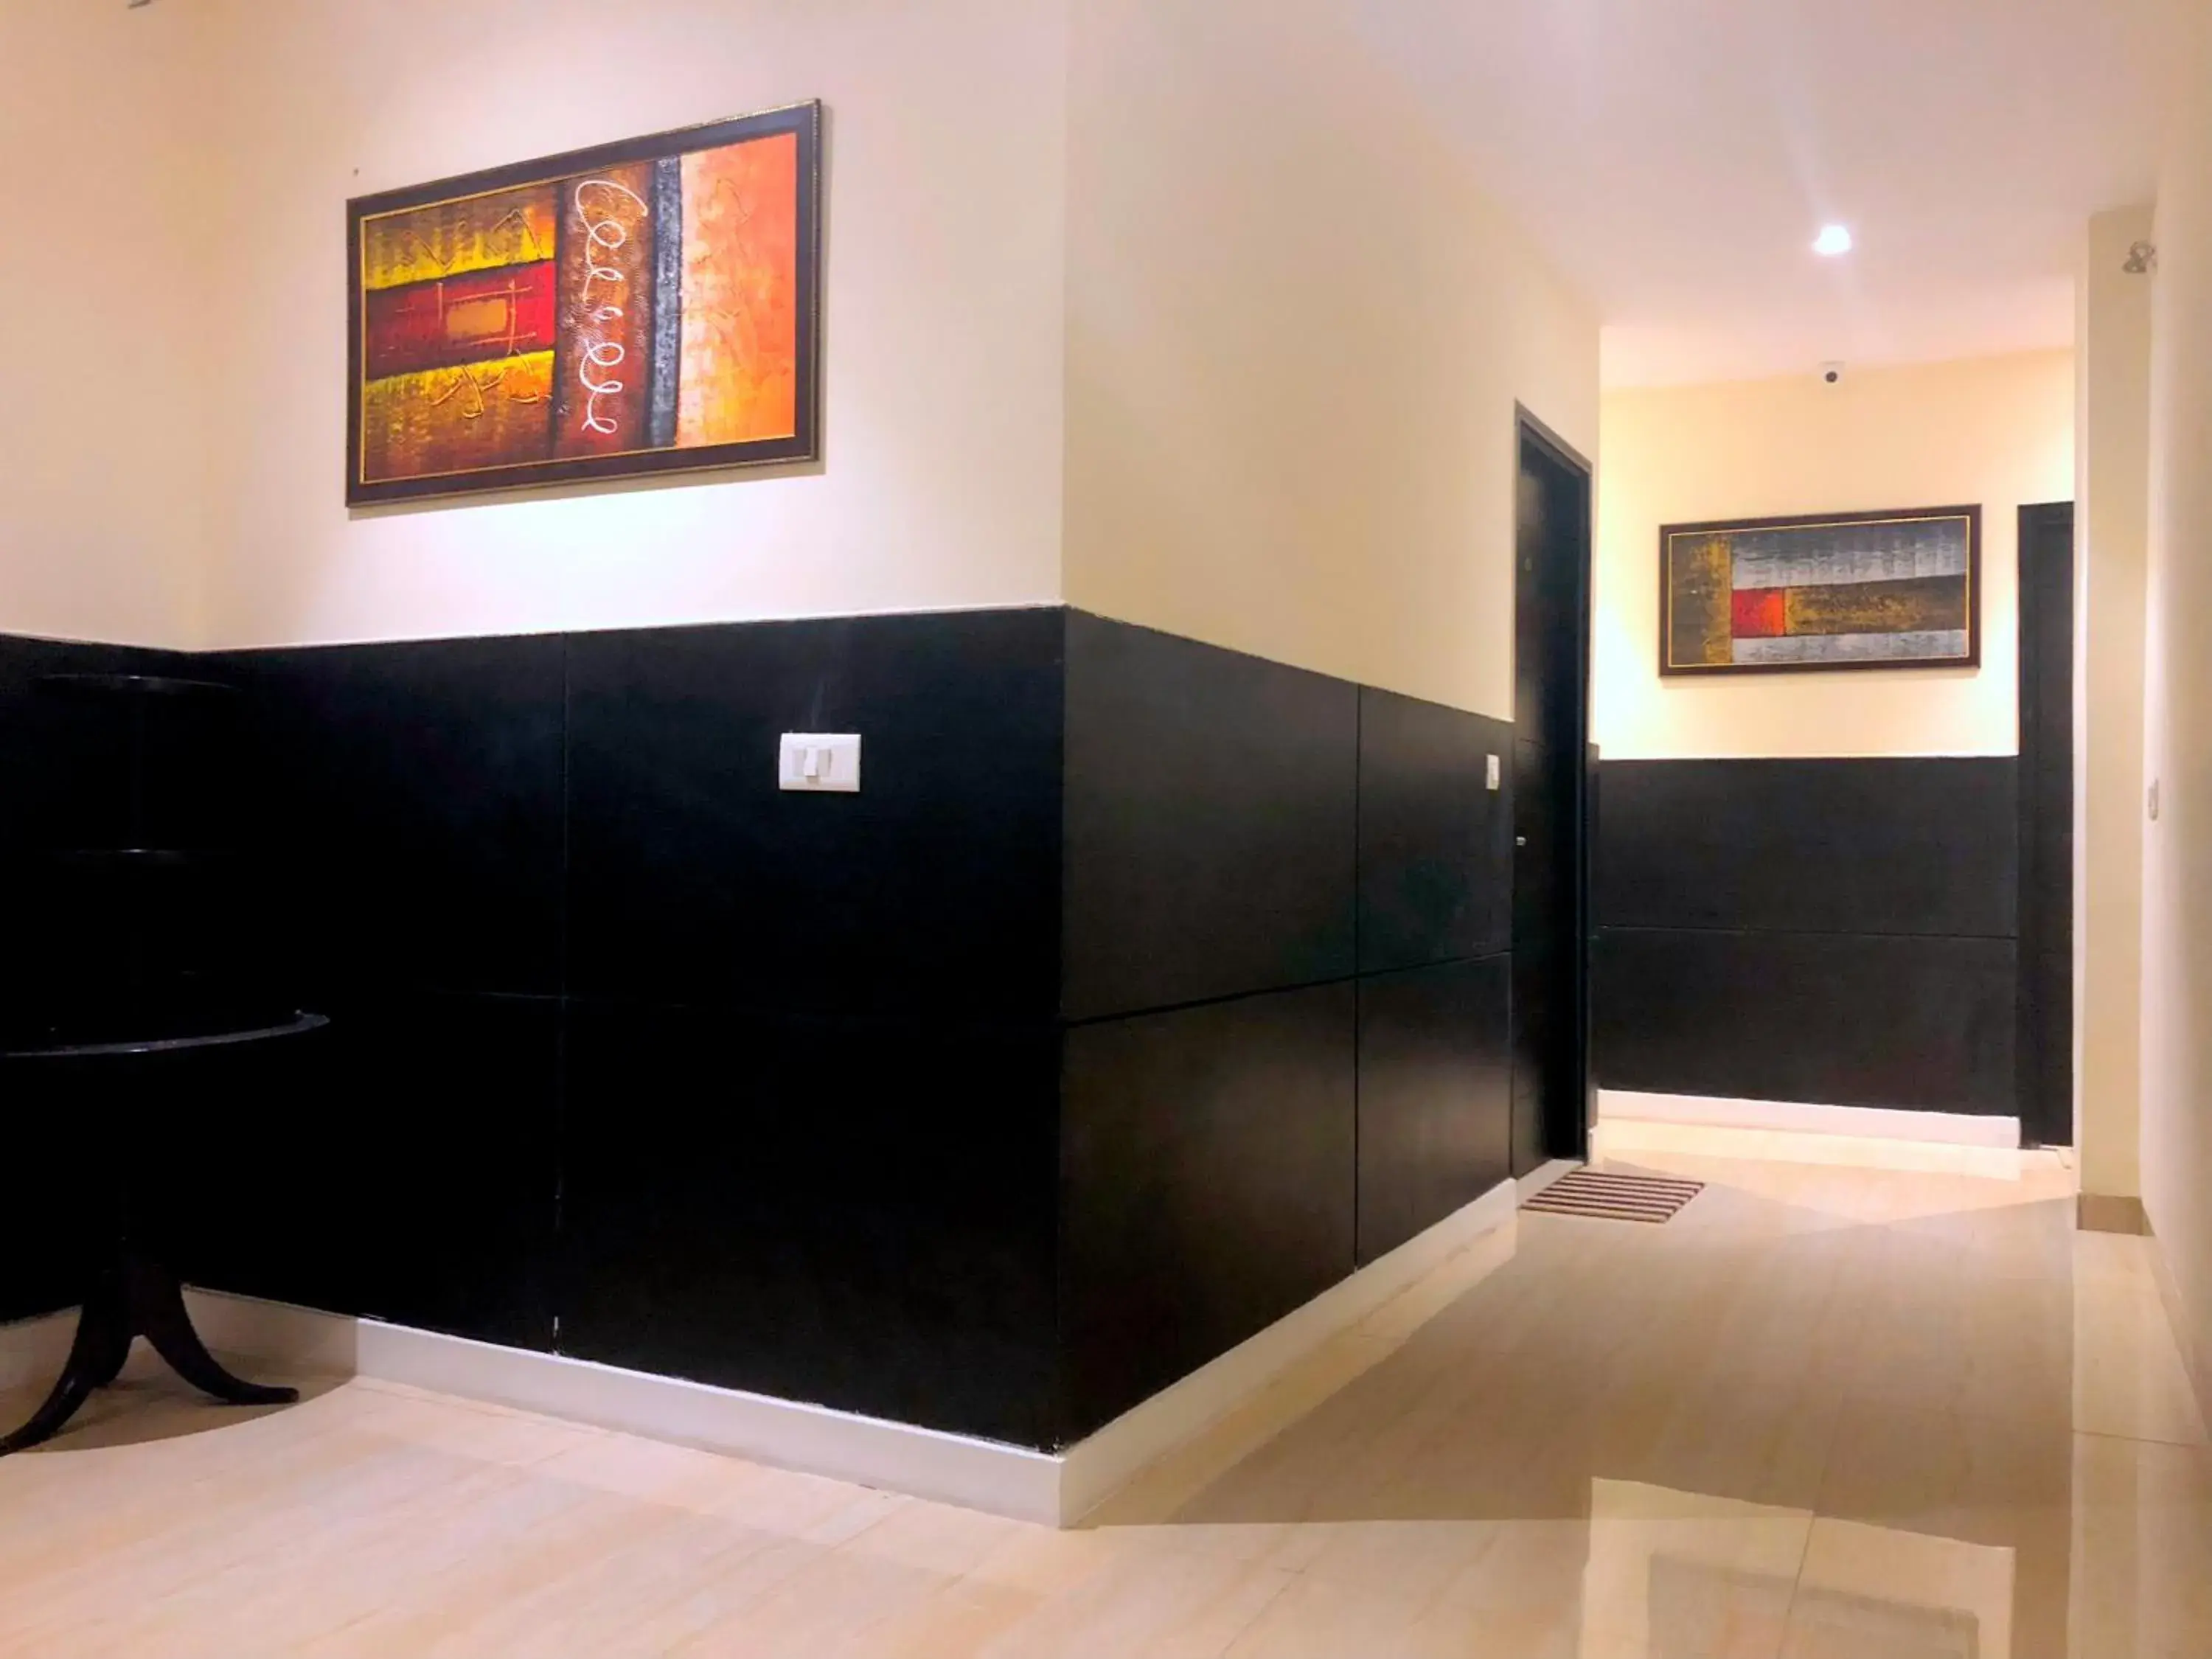 Floor plan, Bathroom in Solitaire Hotel